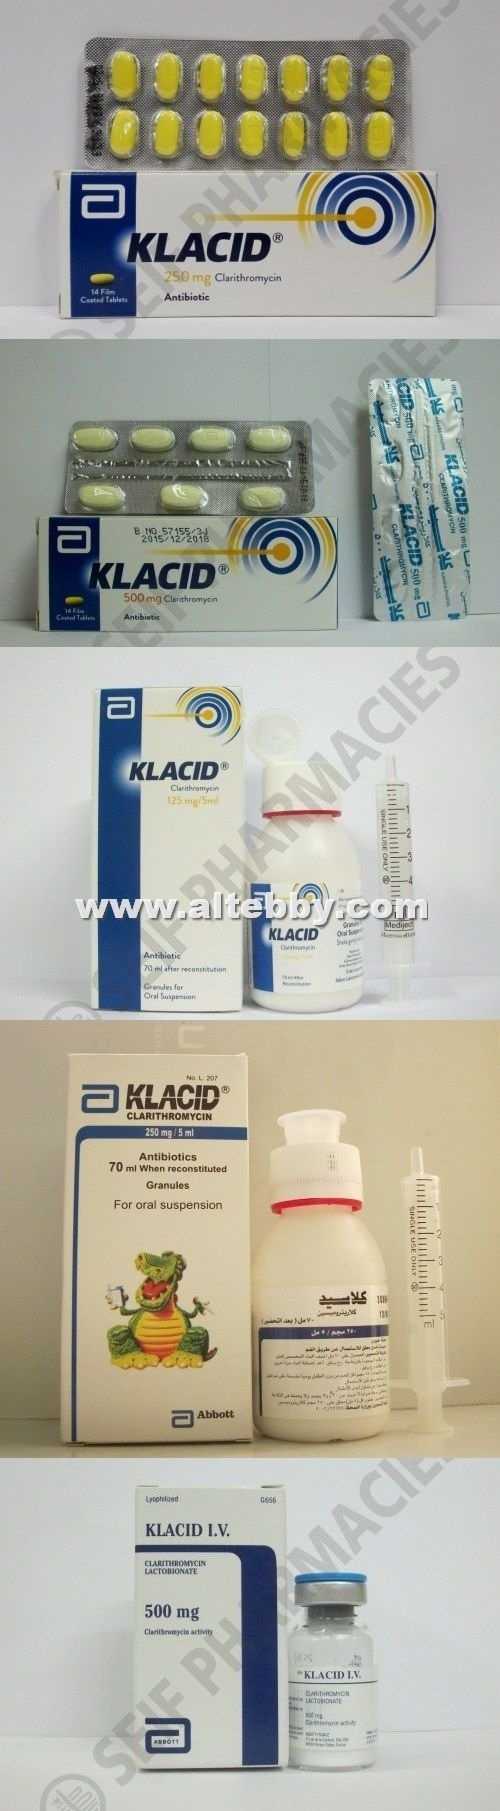 كلاسيد Klacid دواء drug